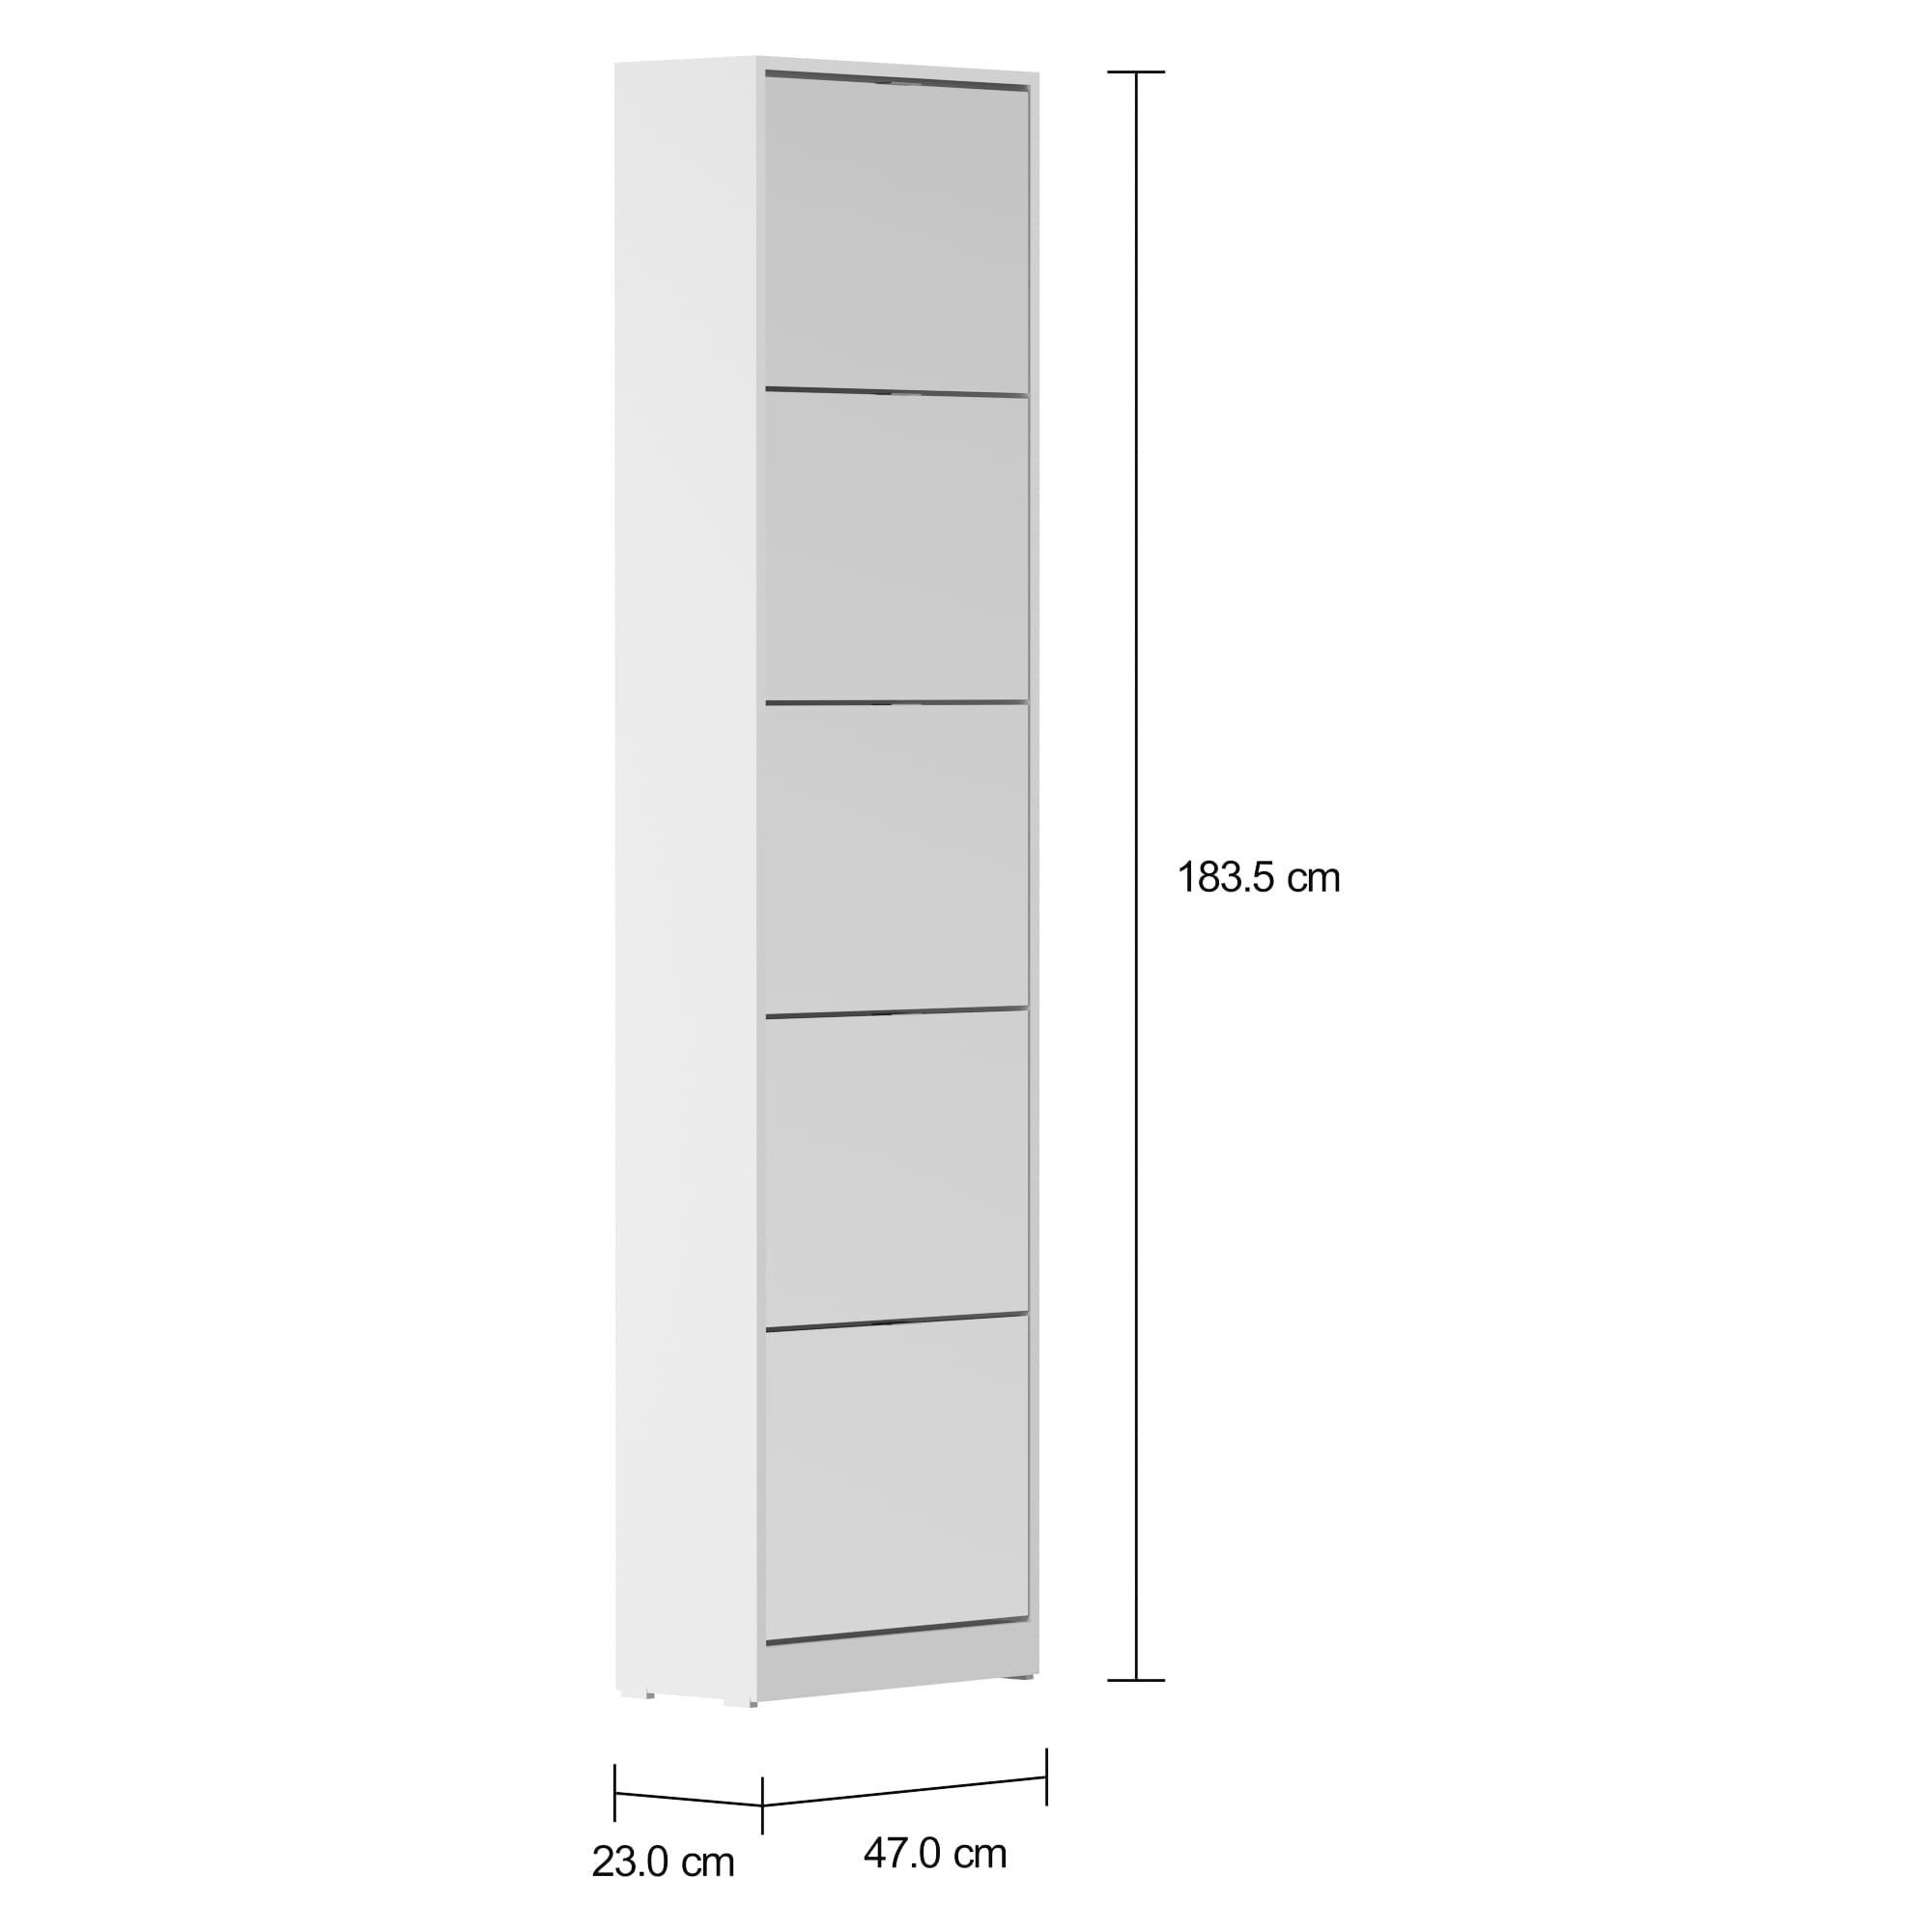 Sapateira vertical de parede e porta para 36 pares - Preta - GH216